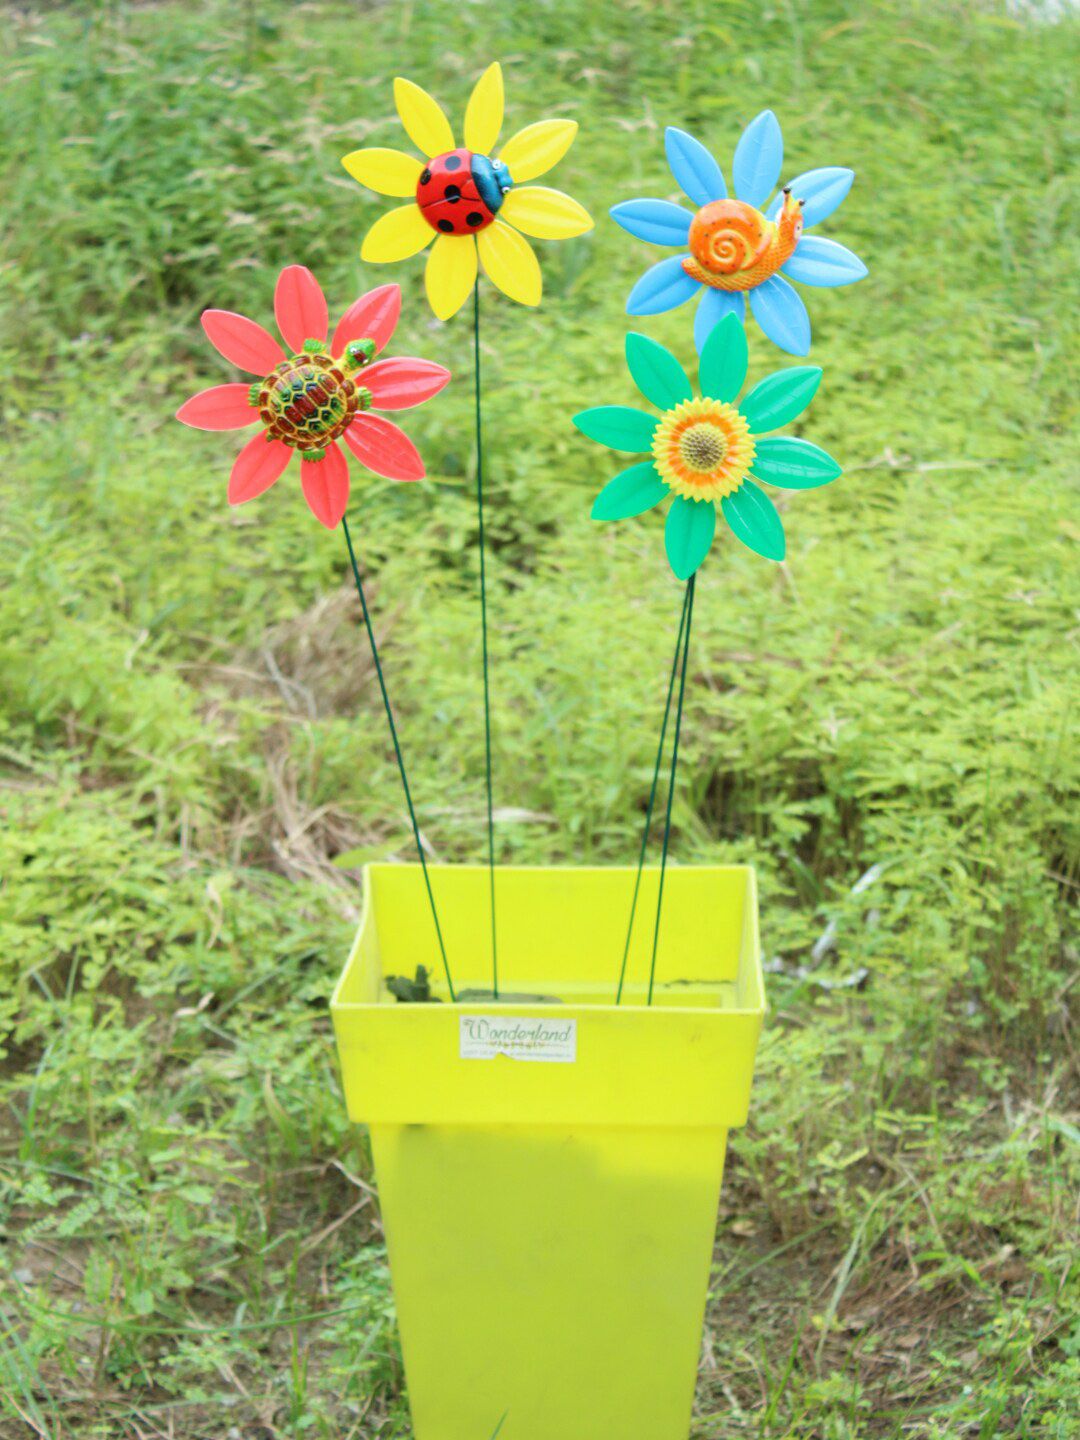 Wonderland Set of 4 Fan Flower Garden Accessories Price in India